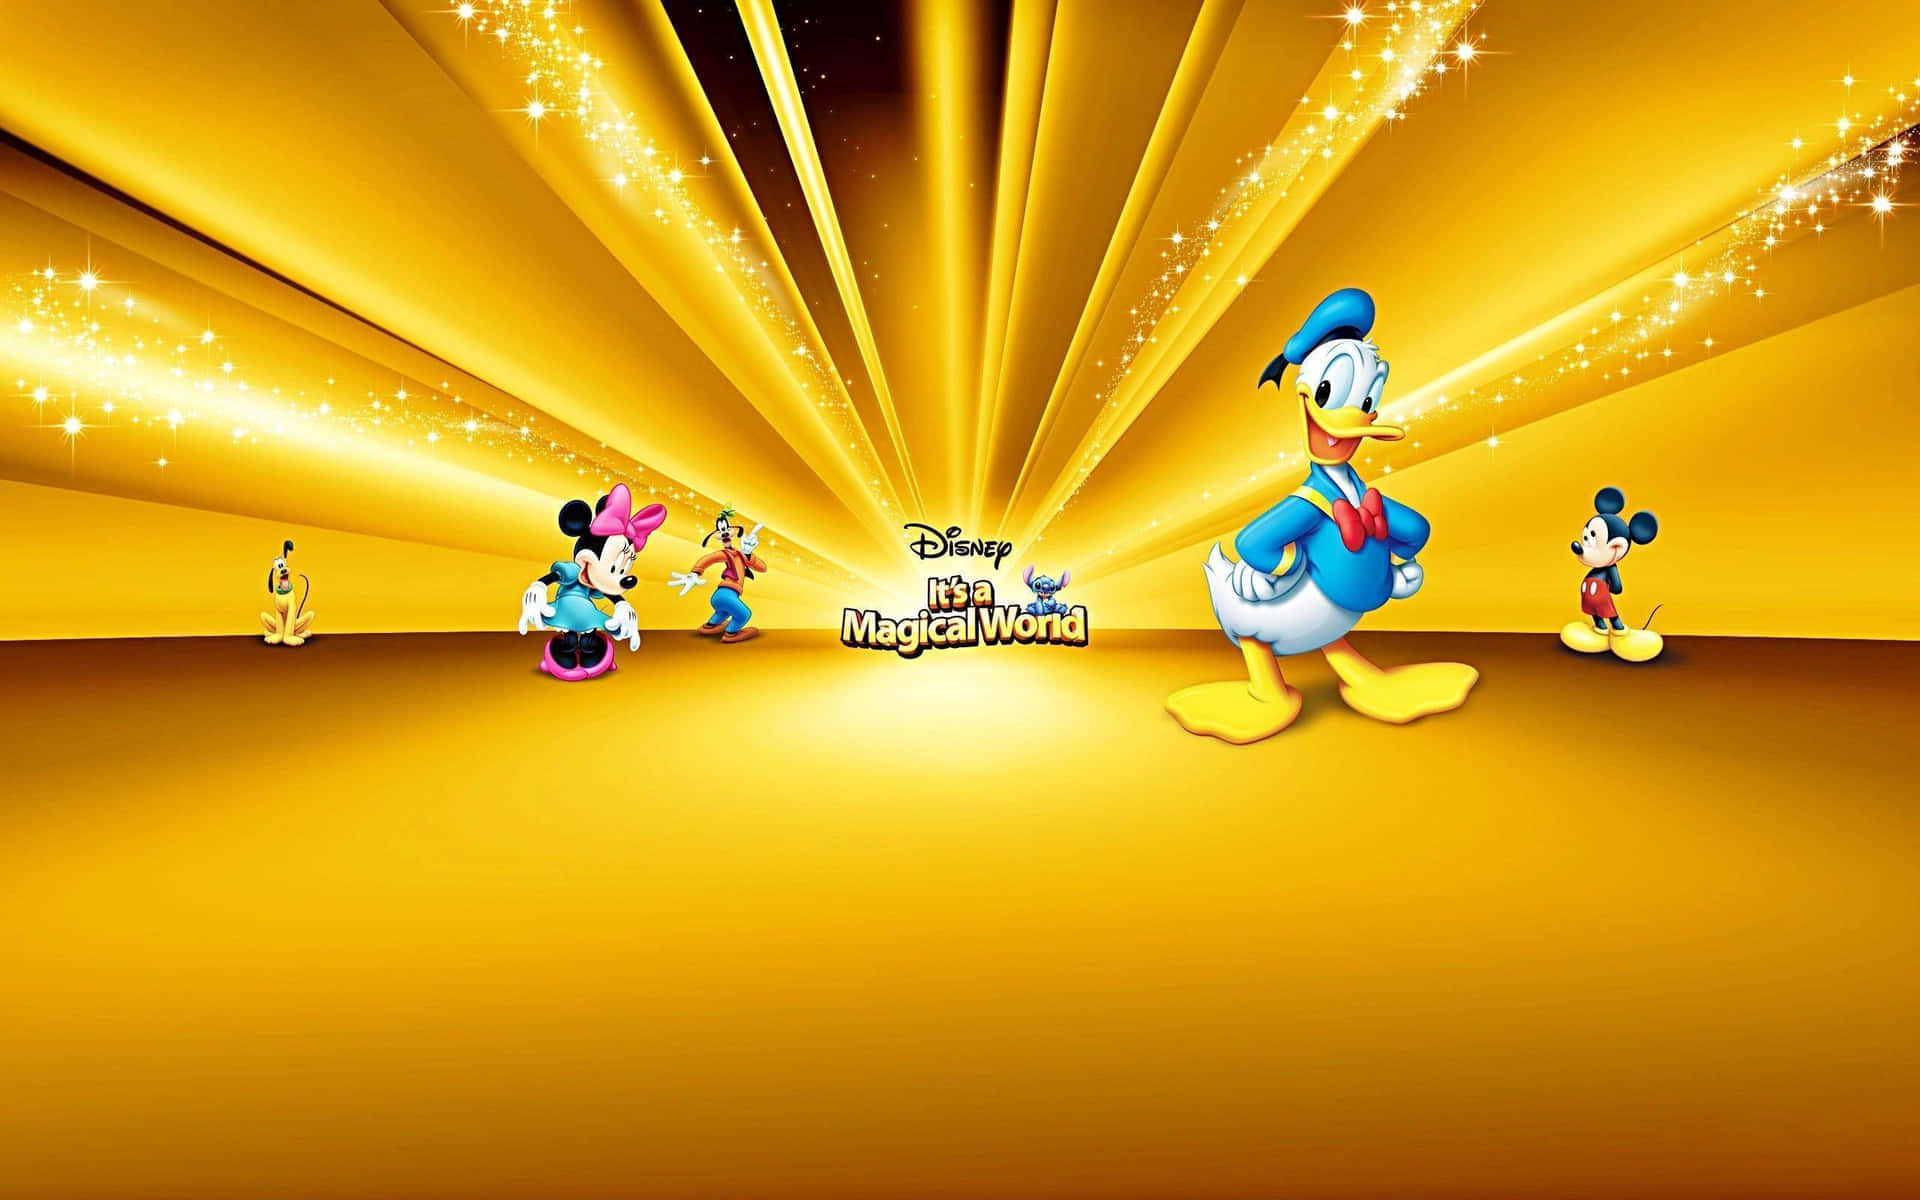 Mejorfondo De Disney Con Personajes De Disney Sobre Un Fondo Dorado.